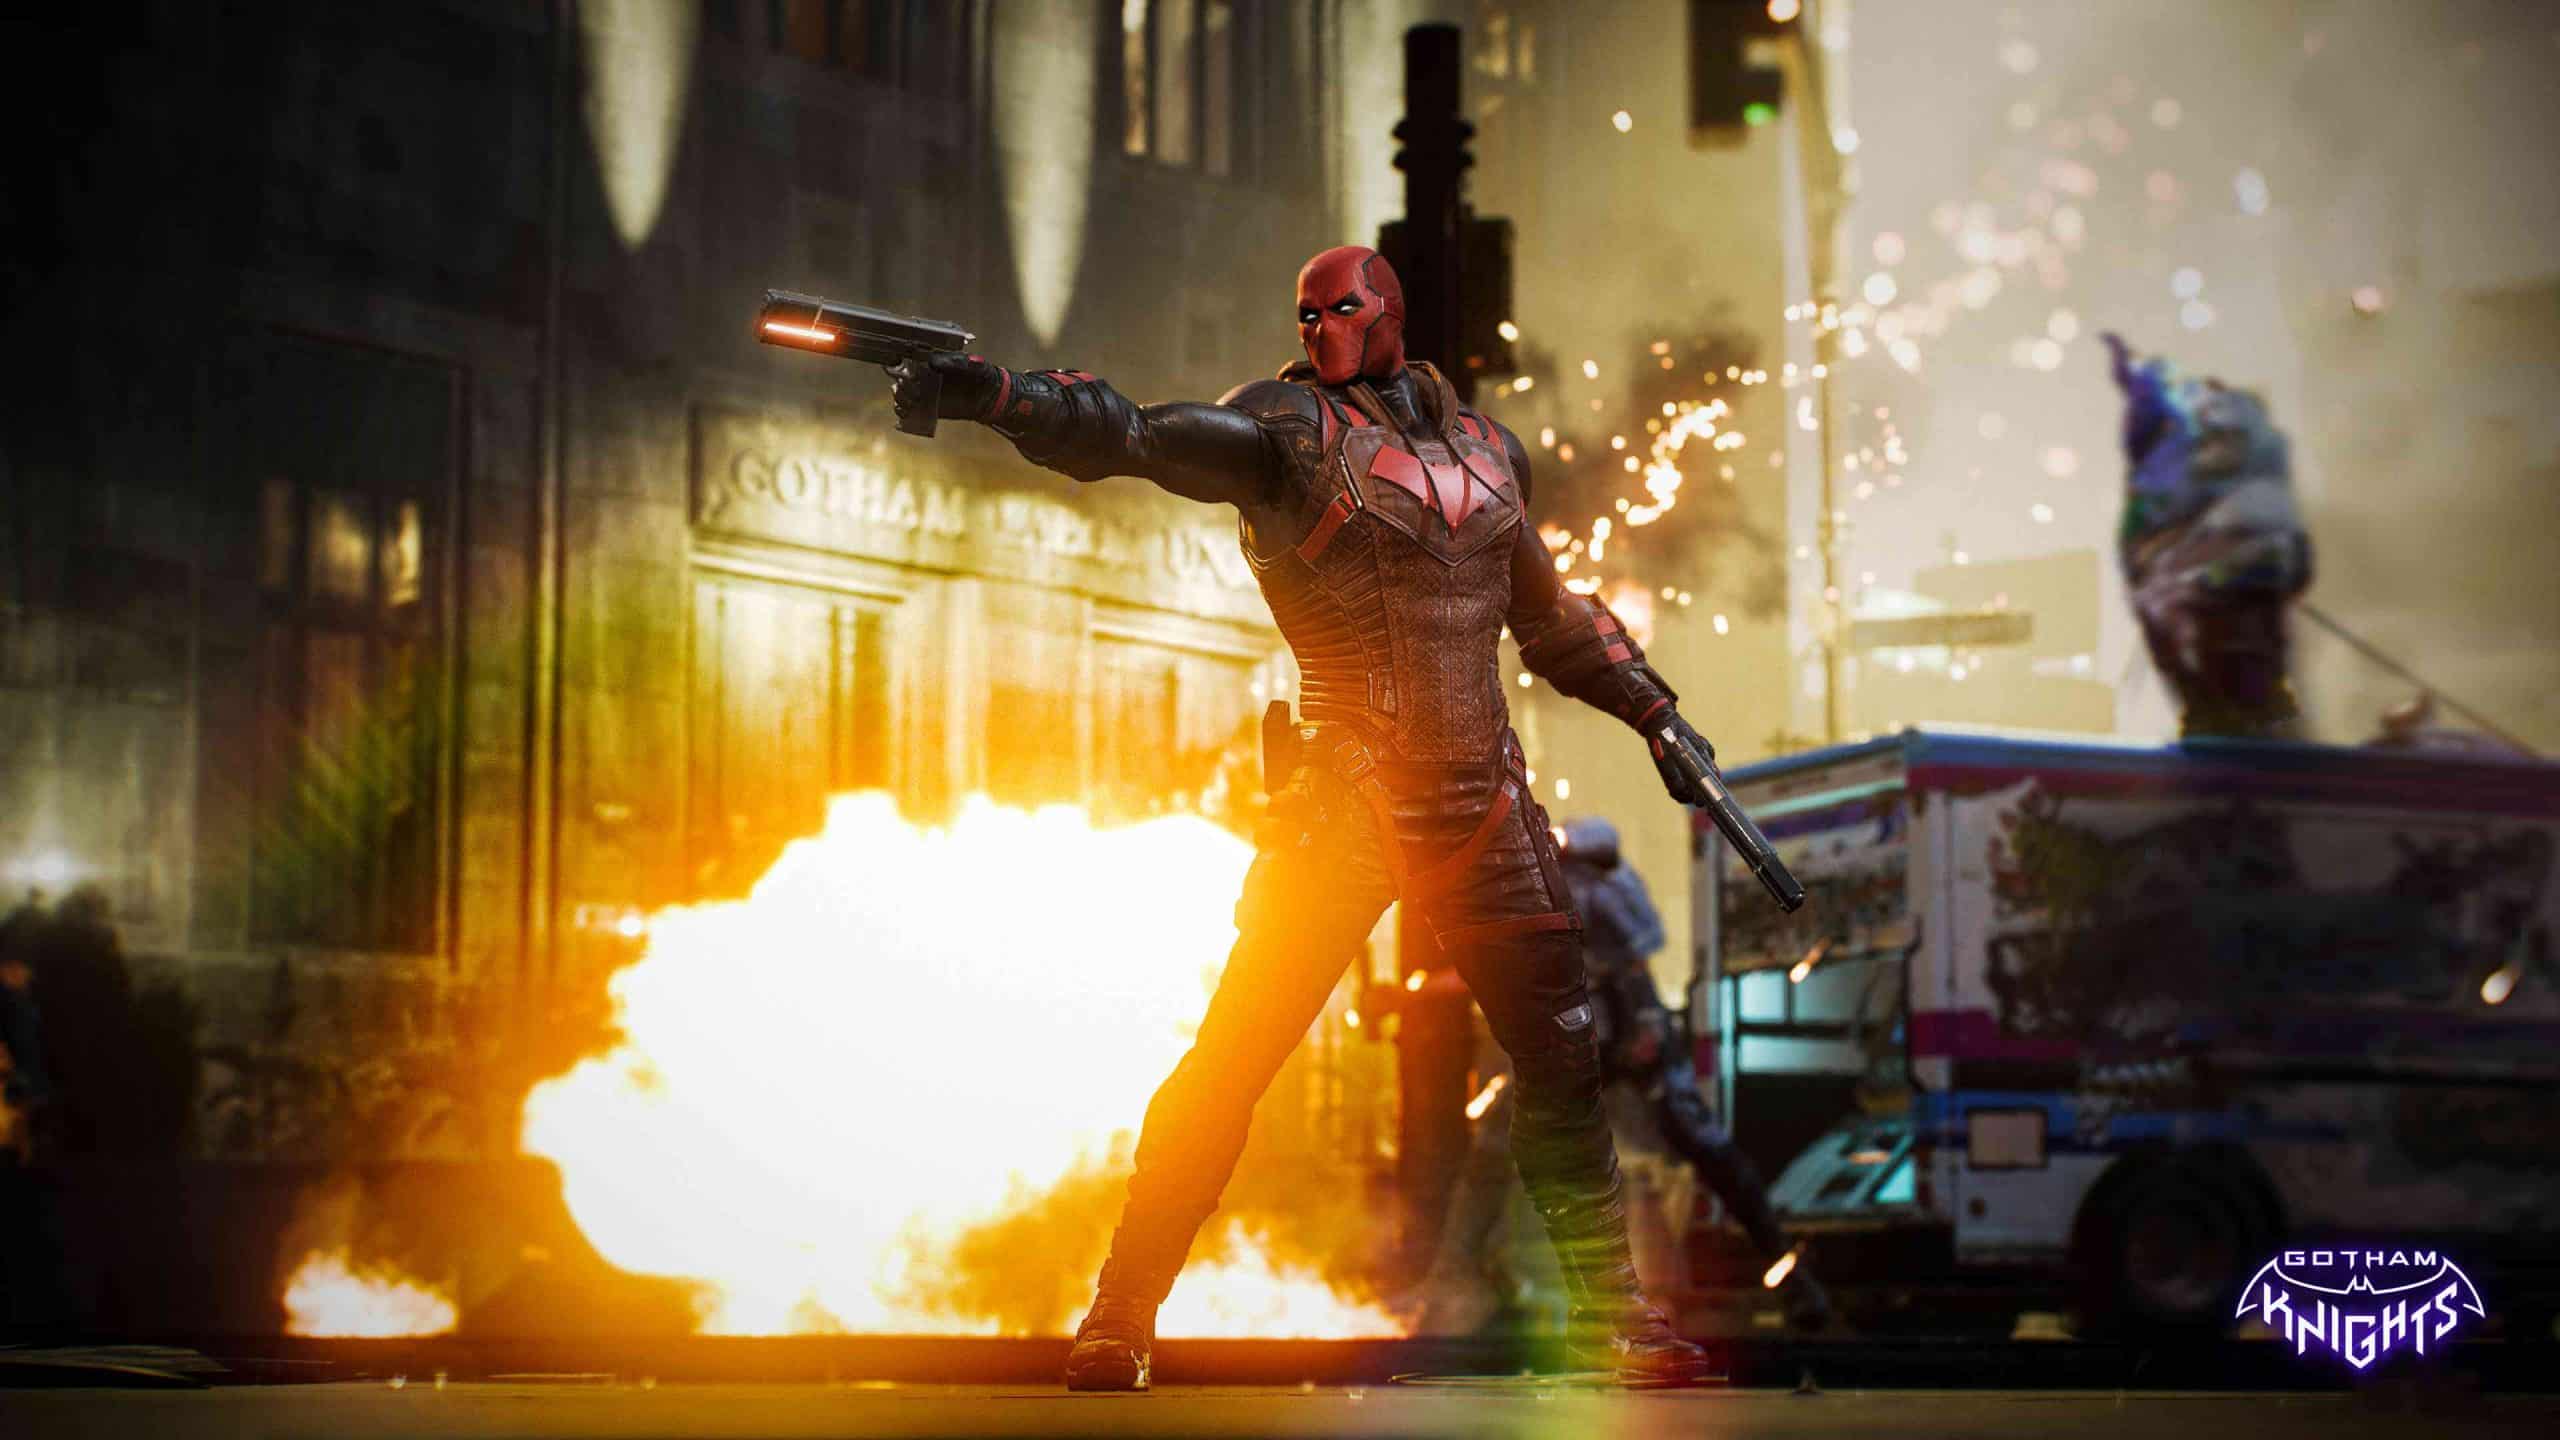 Gotham Knights auf Metacritic: Ein Actionspiel, das sich selbst im Weg steht